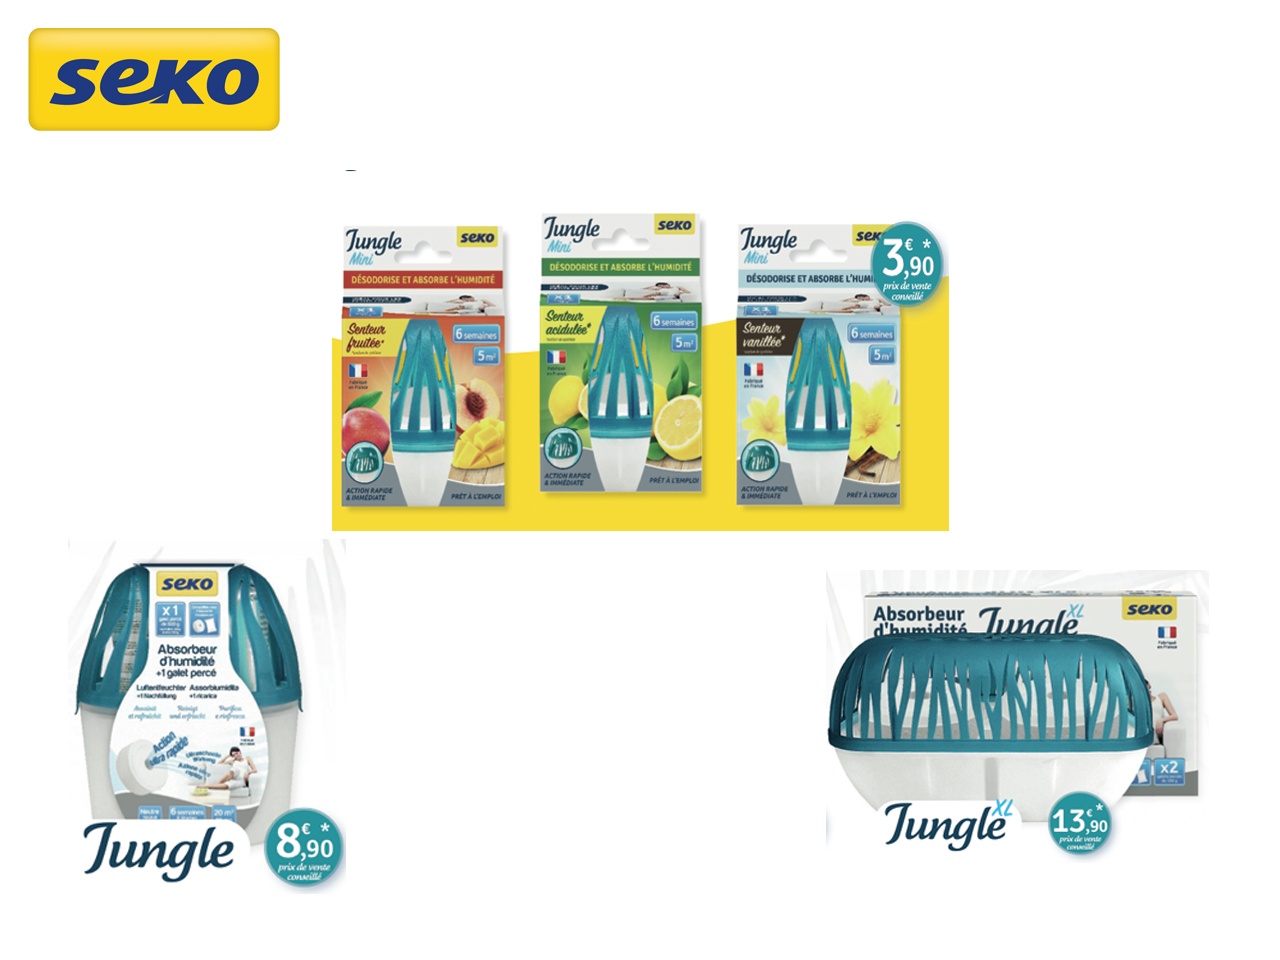 SEKO lance une nouvelle gamme d’absorbeurs d’humidité